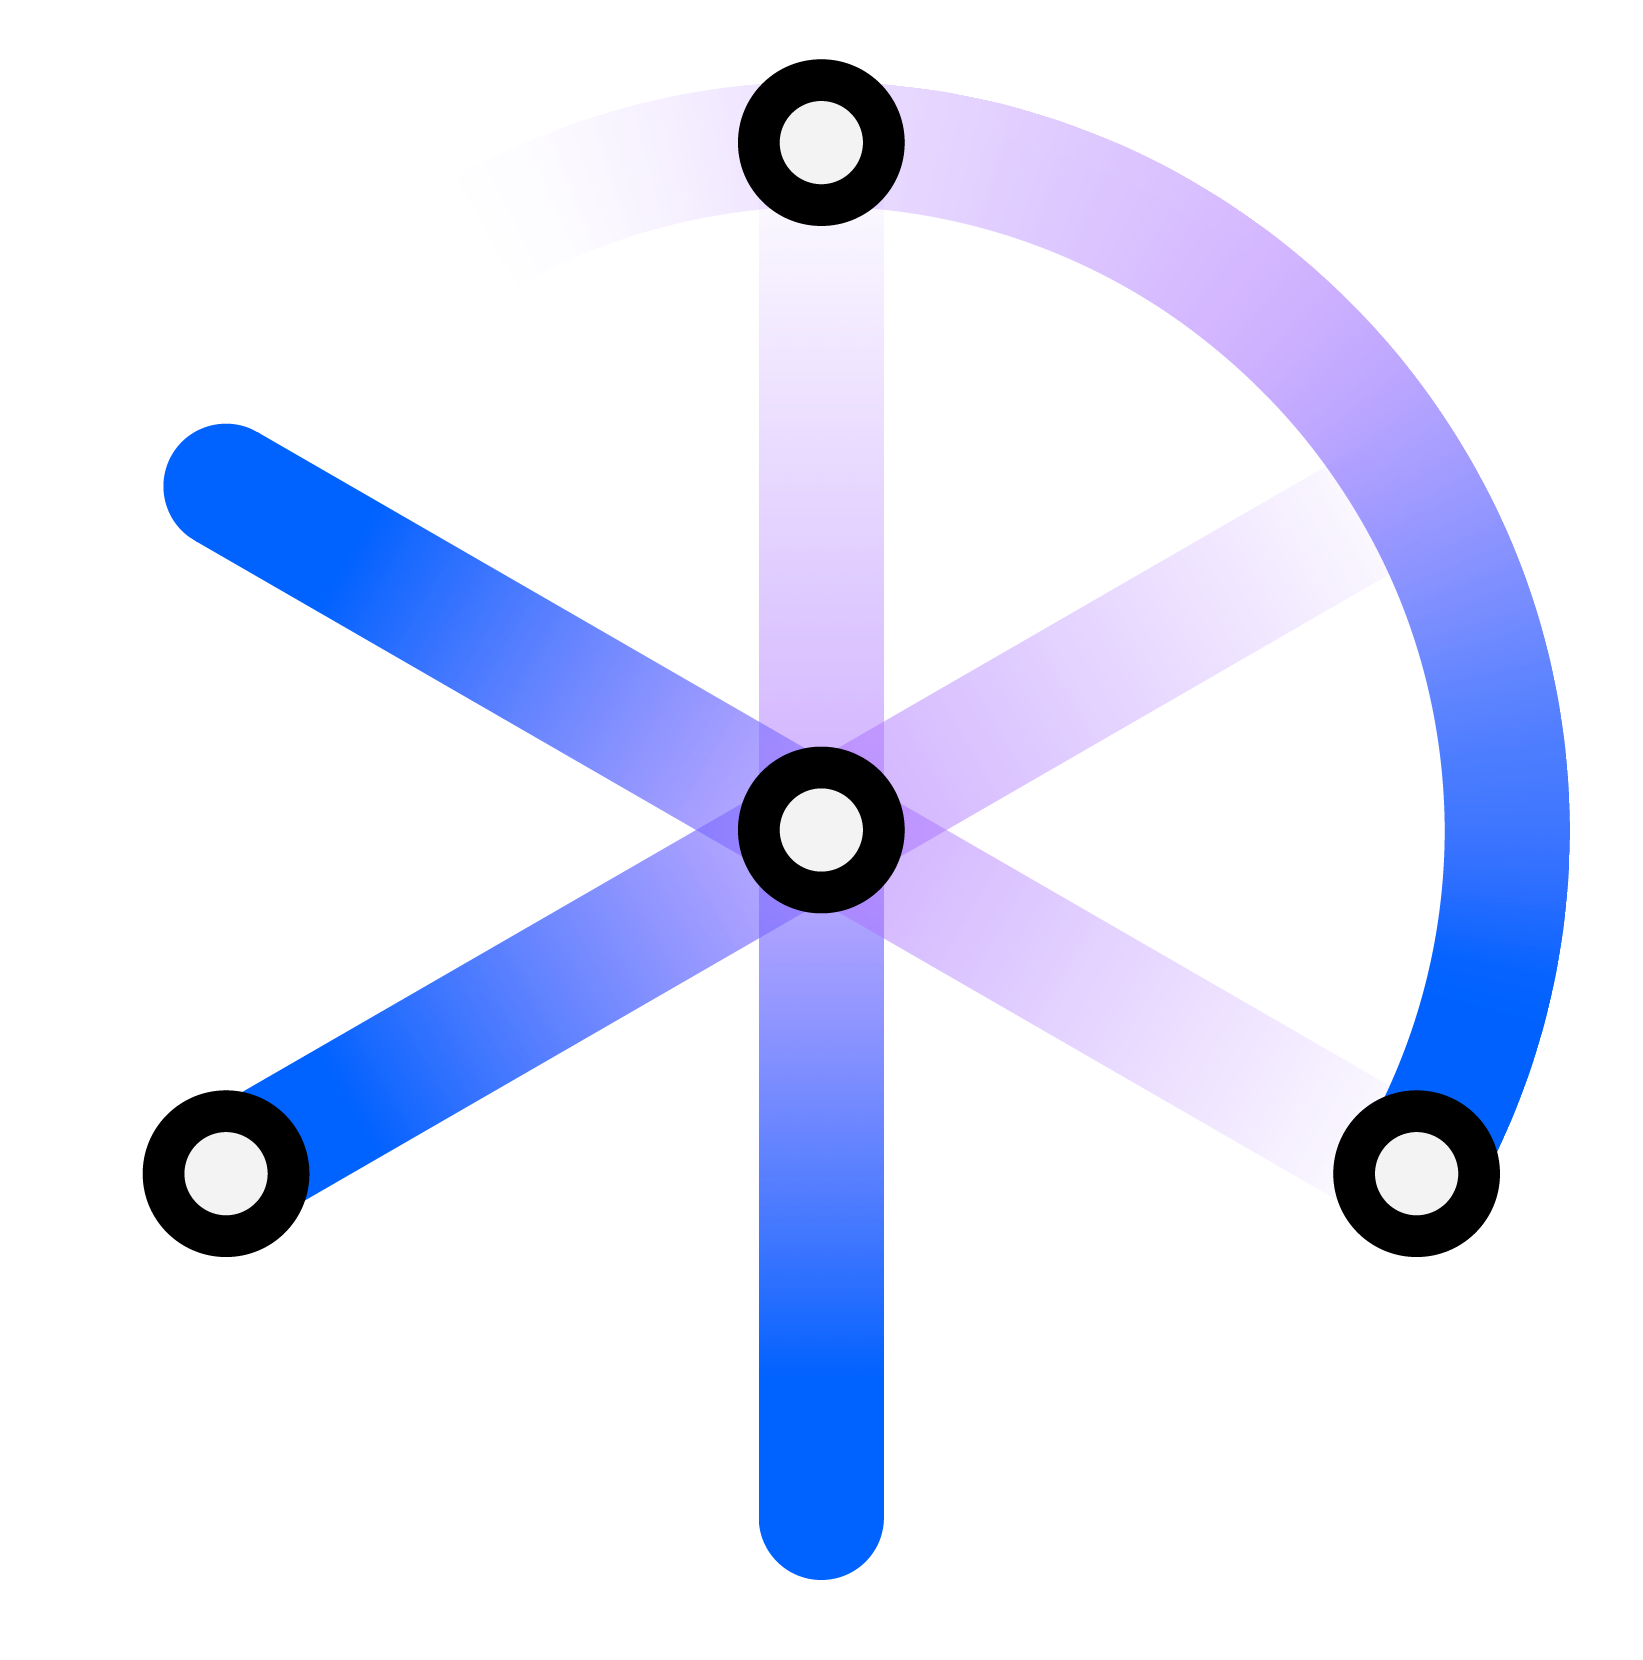 campaign_logo